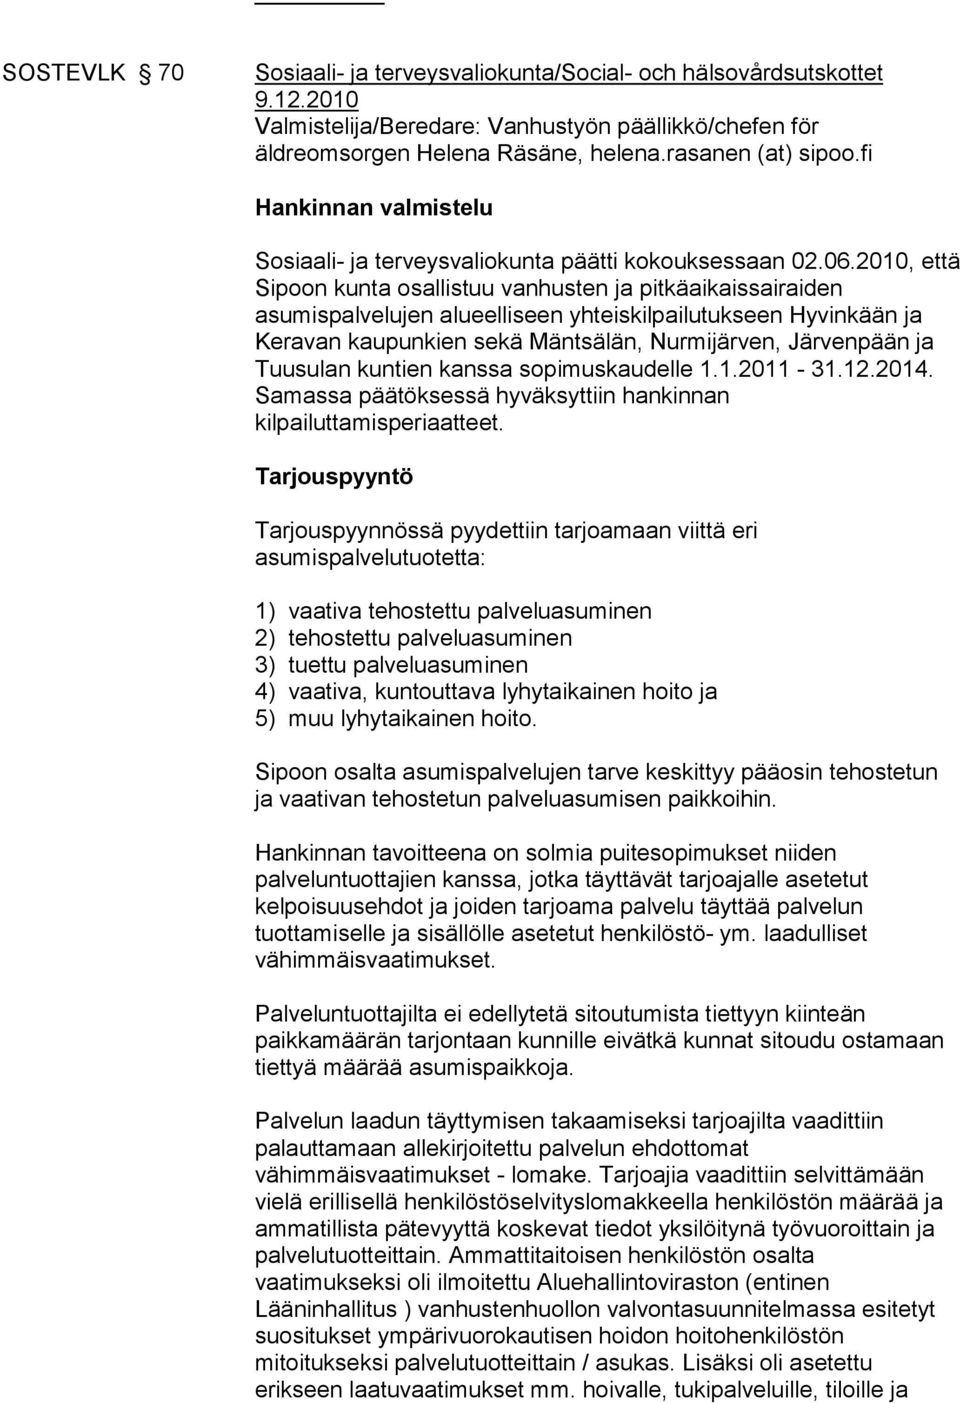 2010, että Sipoon kunta osallistuu vanhusten ja pitkäaikaissairaiden asumispalvelujen alueelliseen yhteiskilpailutukseen Hyvinkään ja Keravan kaupunkien sekä Mäntsälän, Nurmijärven, Järvenpään ja